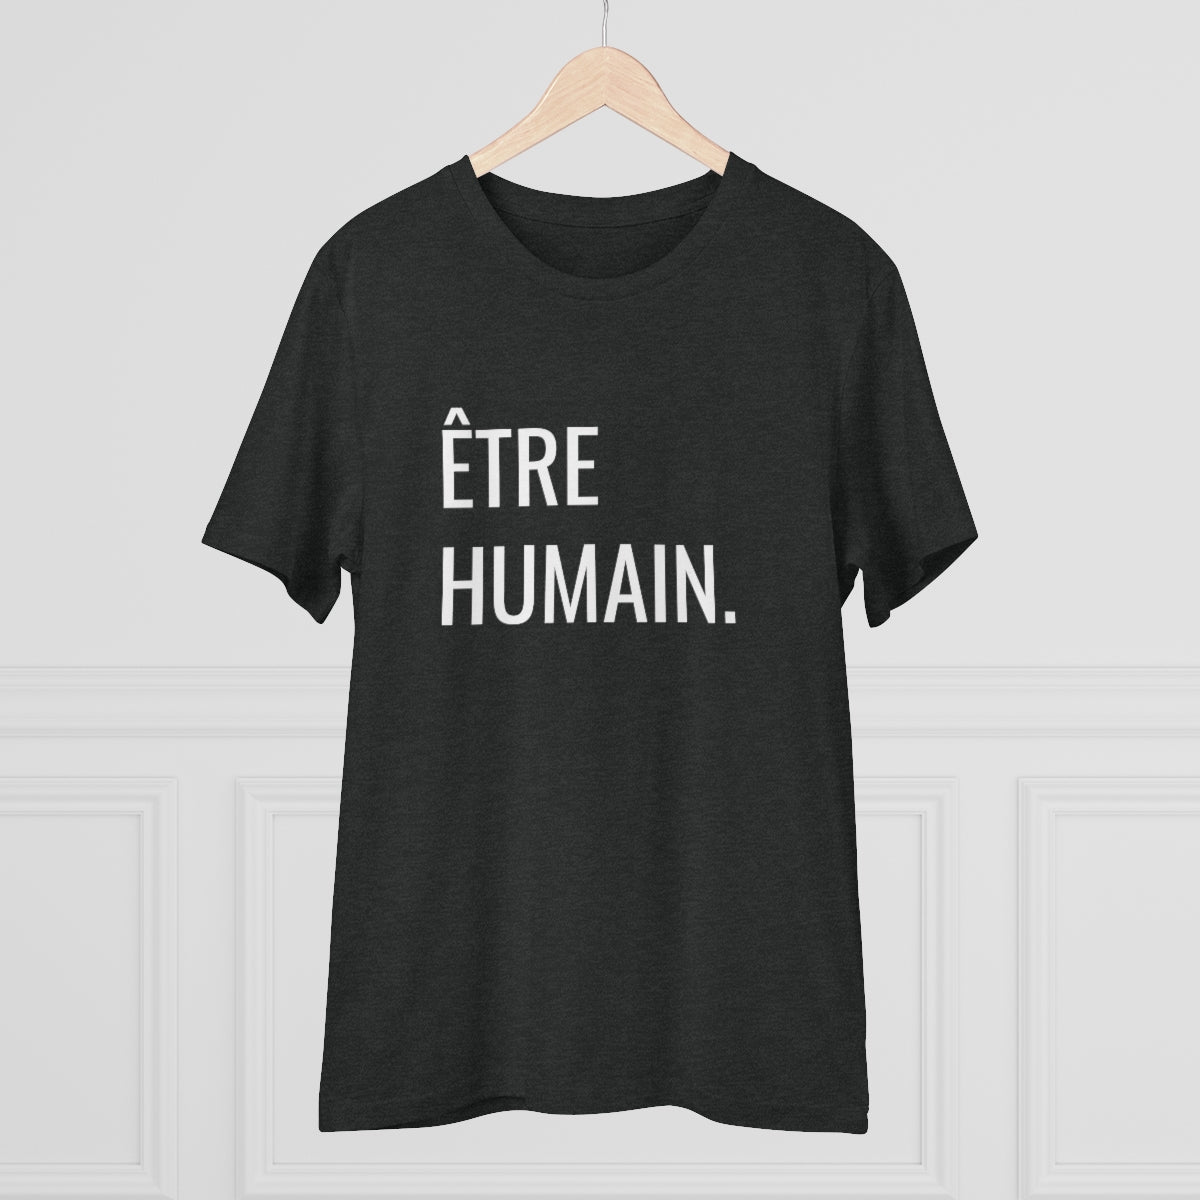 ÊTRE HUMAIN. - Organic Creator T-shirt - Unisex – Be human club